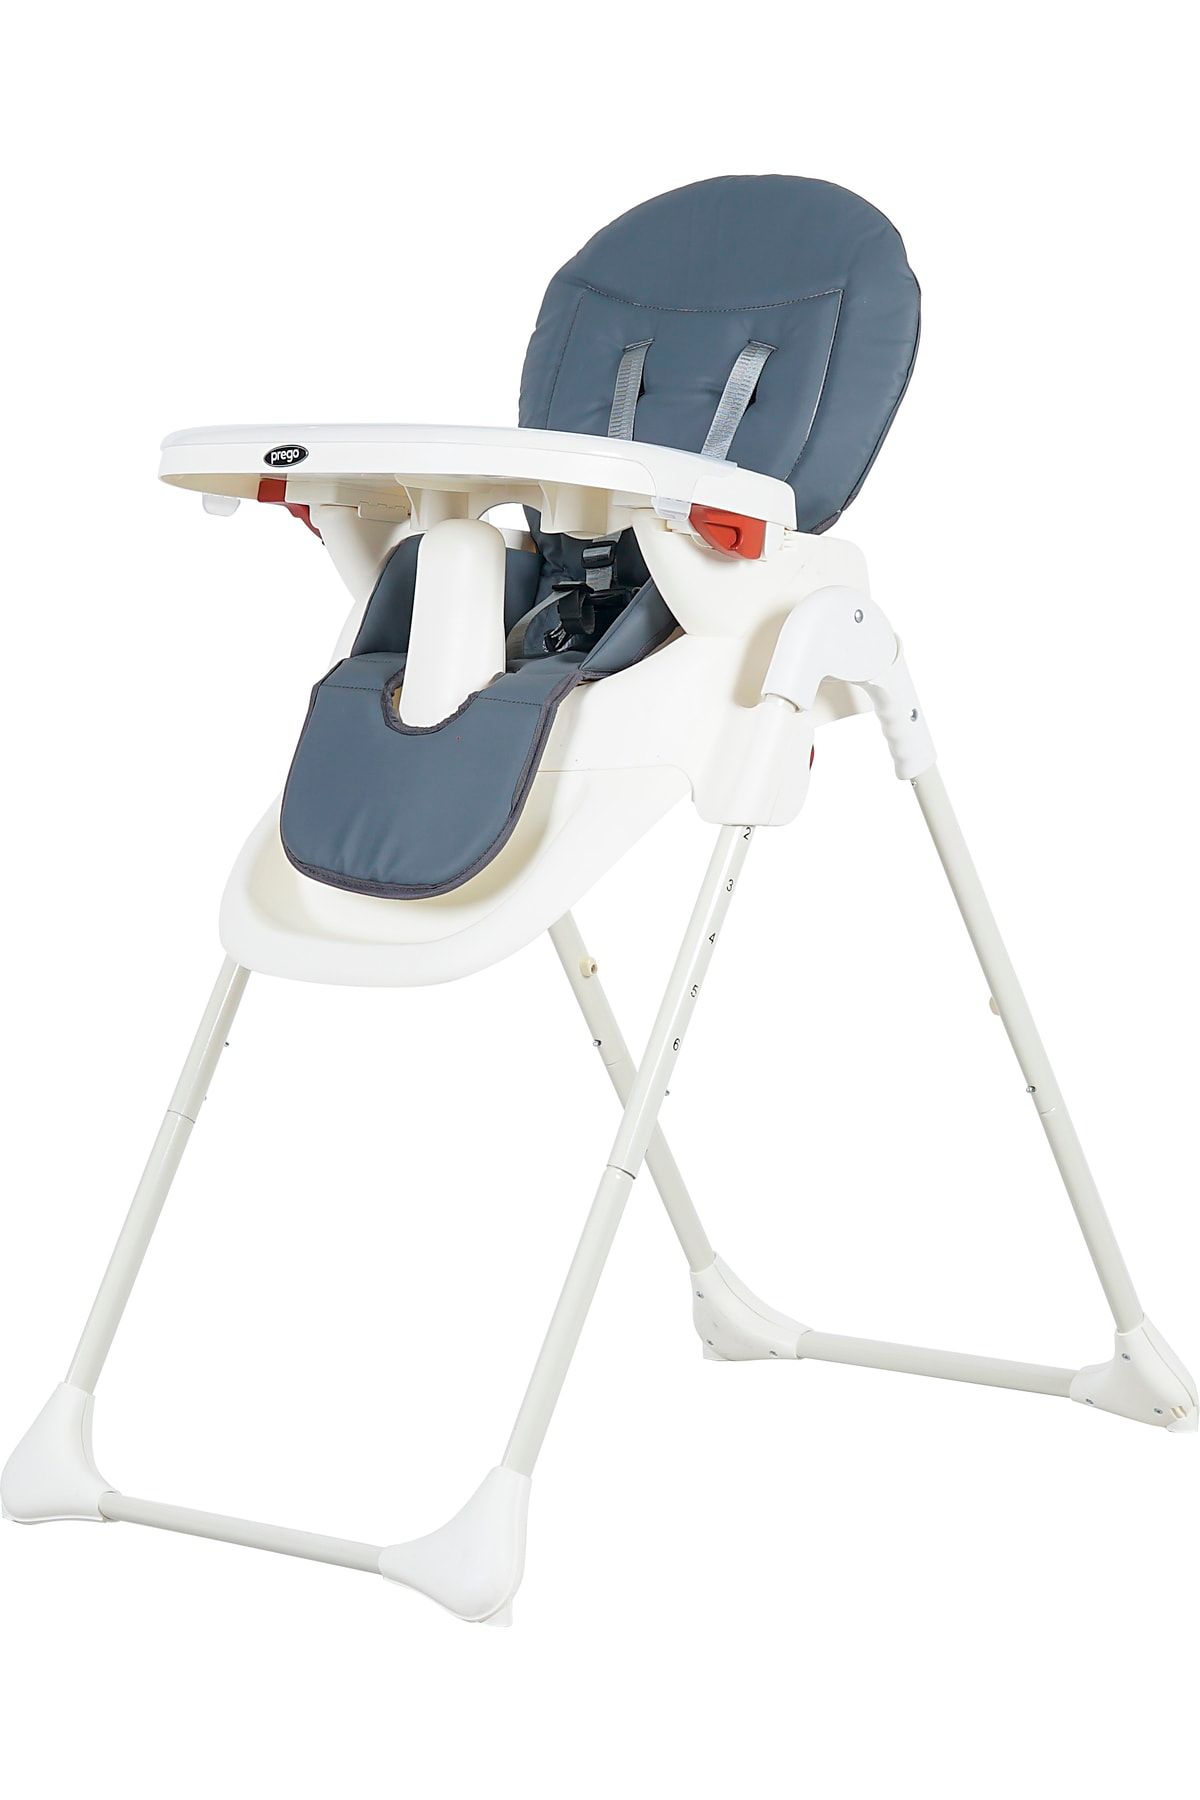 Prego 3034 Pino Mama Sandalyesi Pratik Ve Hızlı Katlanabilir Kullanışlı Ve Geniş Mama Tablası